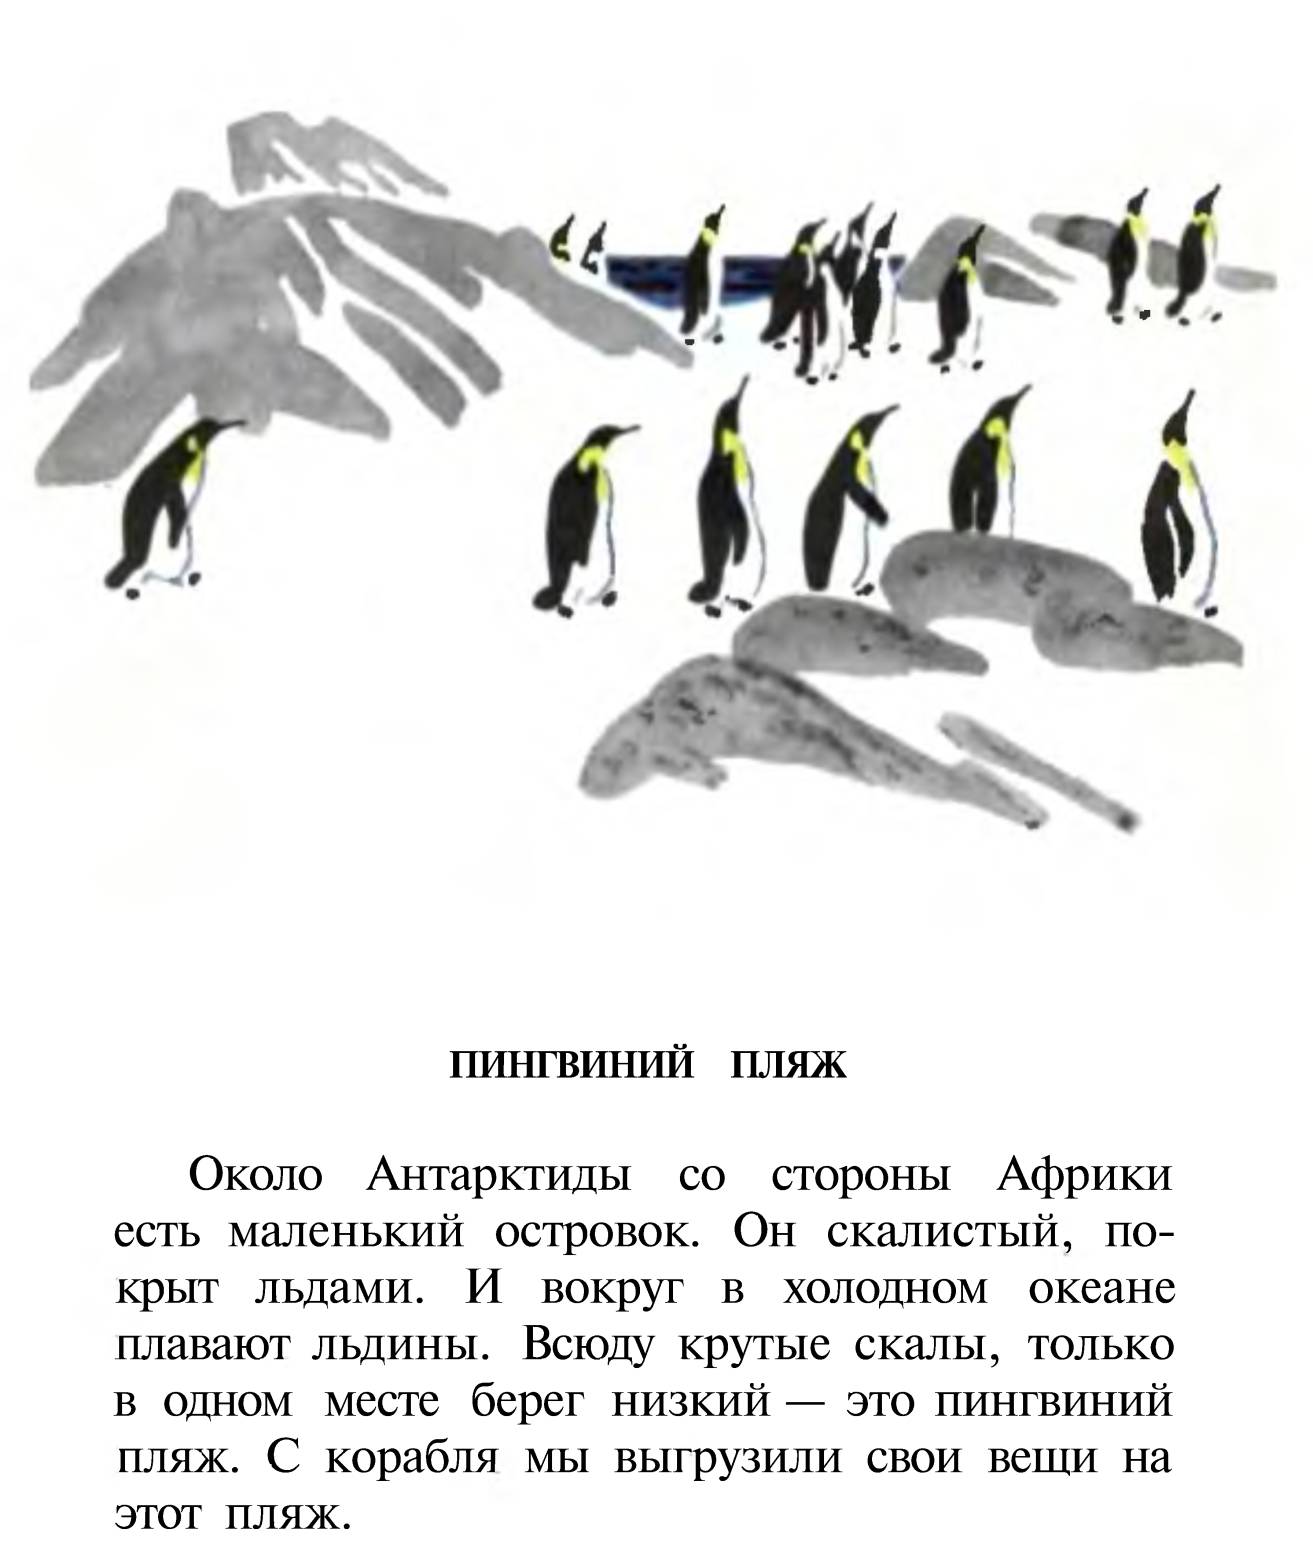 Чтение про пингвинов в старшей группе. Рассказ про пингвинов Снегирев. Г Снегирева про пингвинов рассказ. Чтение рассказа Снегирева Пингвиний пляж.